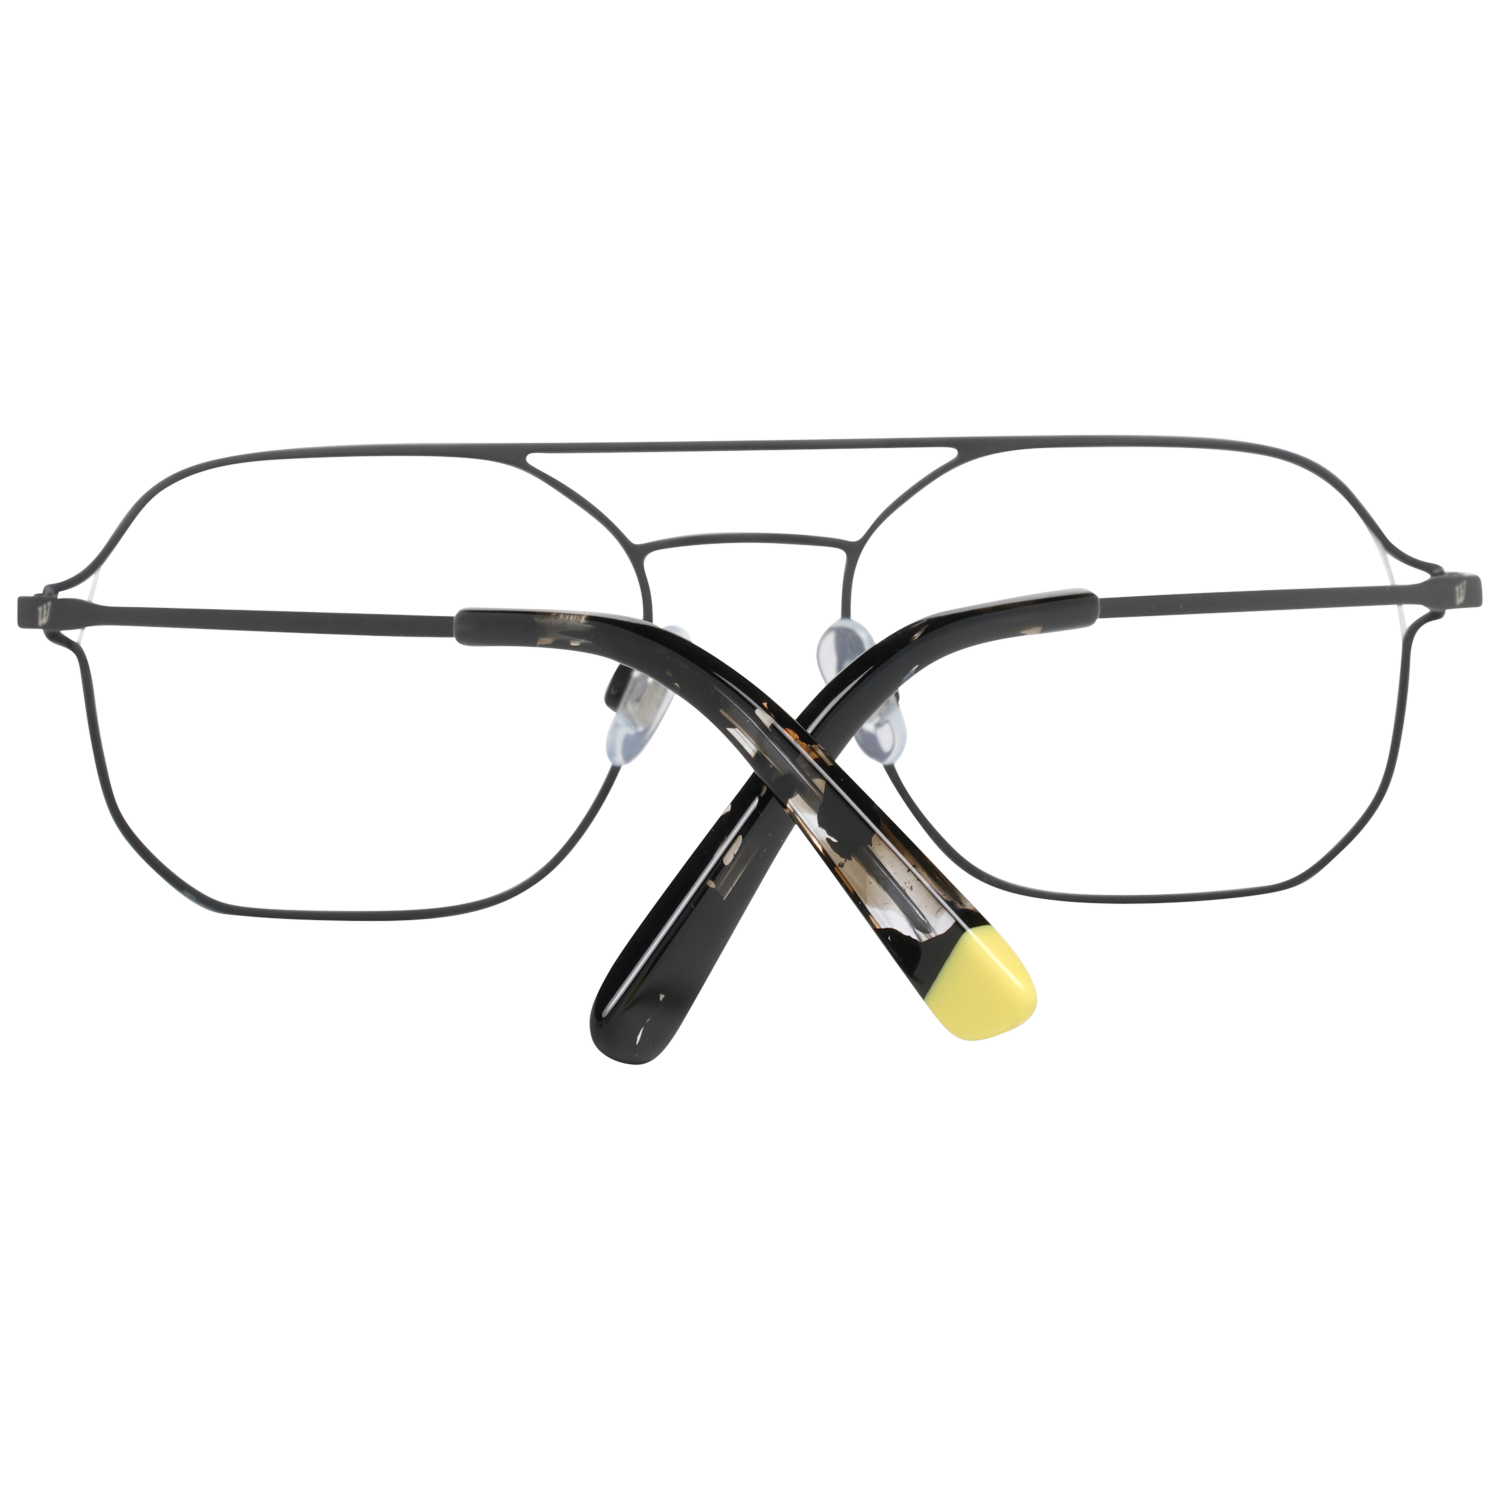 Web Frames Web Optical Frame WE5299 002 53 Eyeglasses Eyewear UK USA Australia 